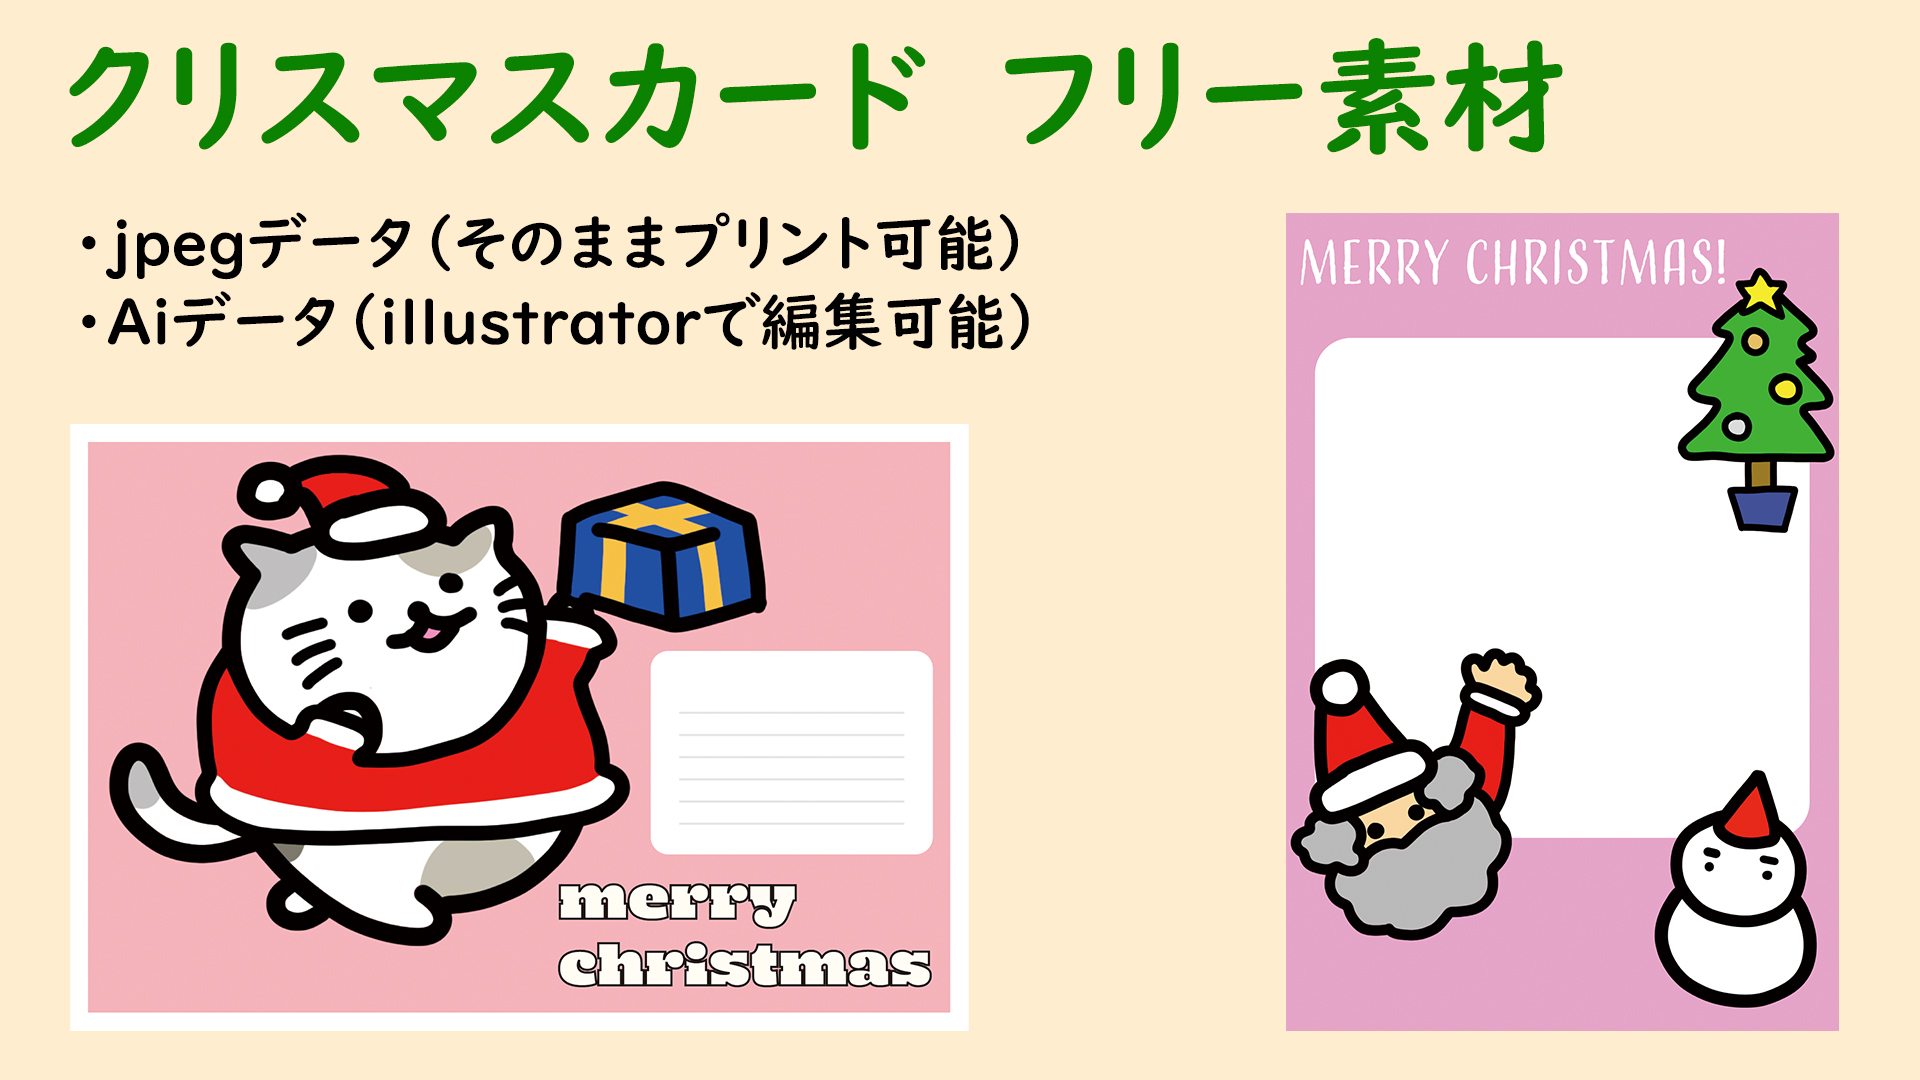 クリスマスカード 無料 フリー素材 そのままプリントして使用もできます すぐにダウンロード可能 のざのざノート